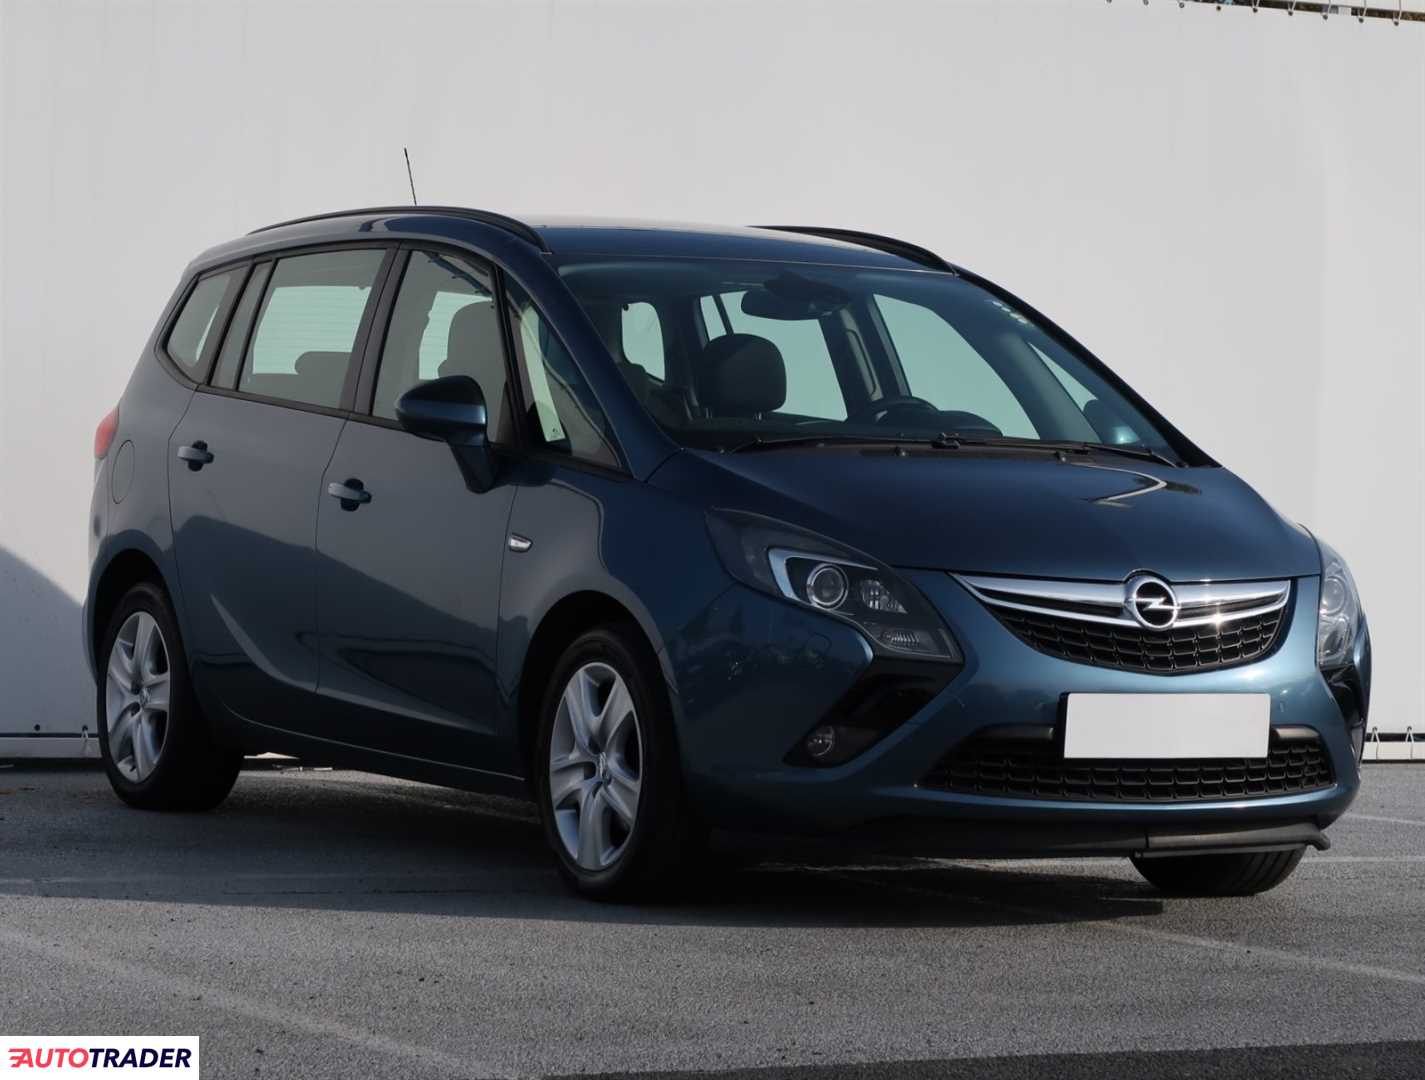 Opel Zafira 2012 2.0 128 KM